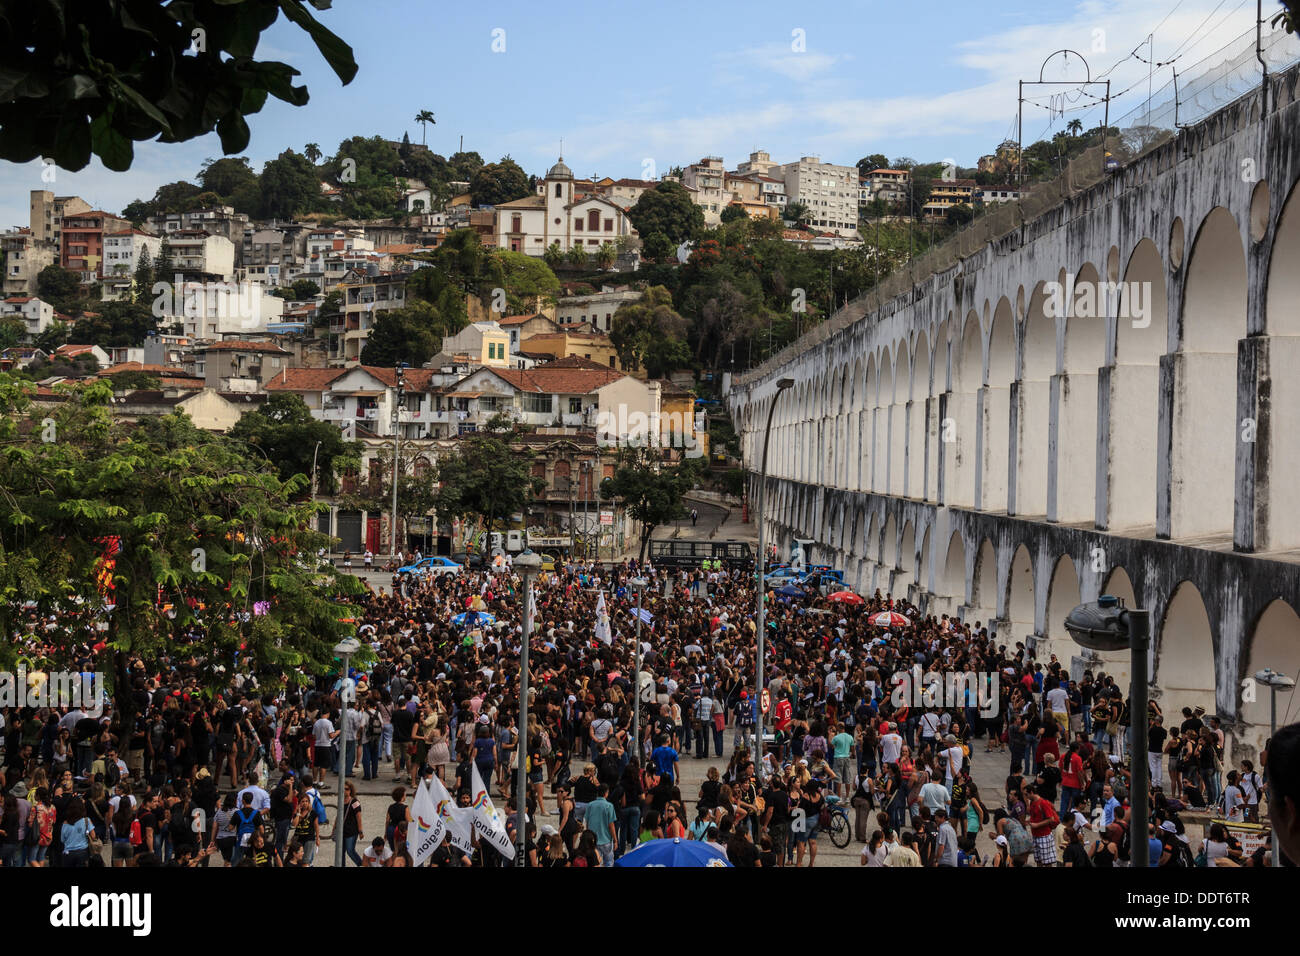 La grève. Le maire de Rio de Janeiro refuse l'augmentation de salaire pour les enseignants des écoles publiques. La grève se poursuit (le 03.08.13) Banque D'Images